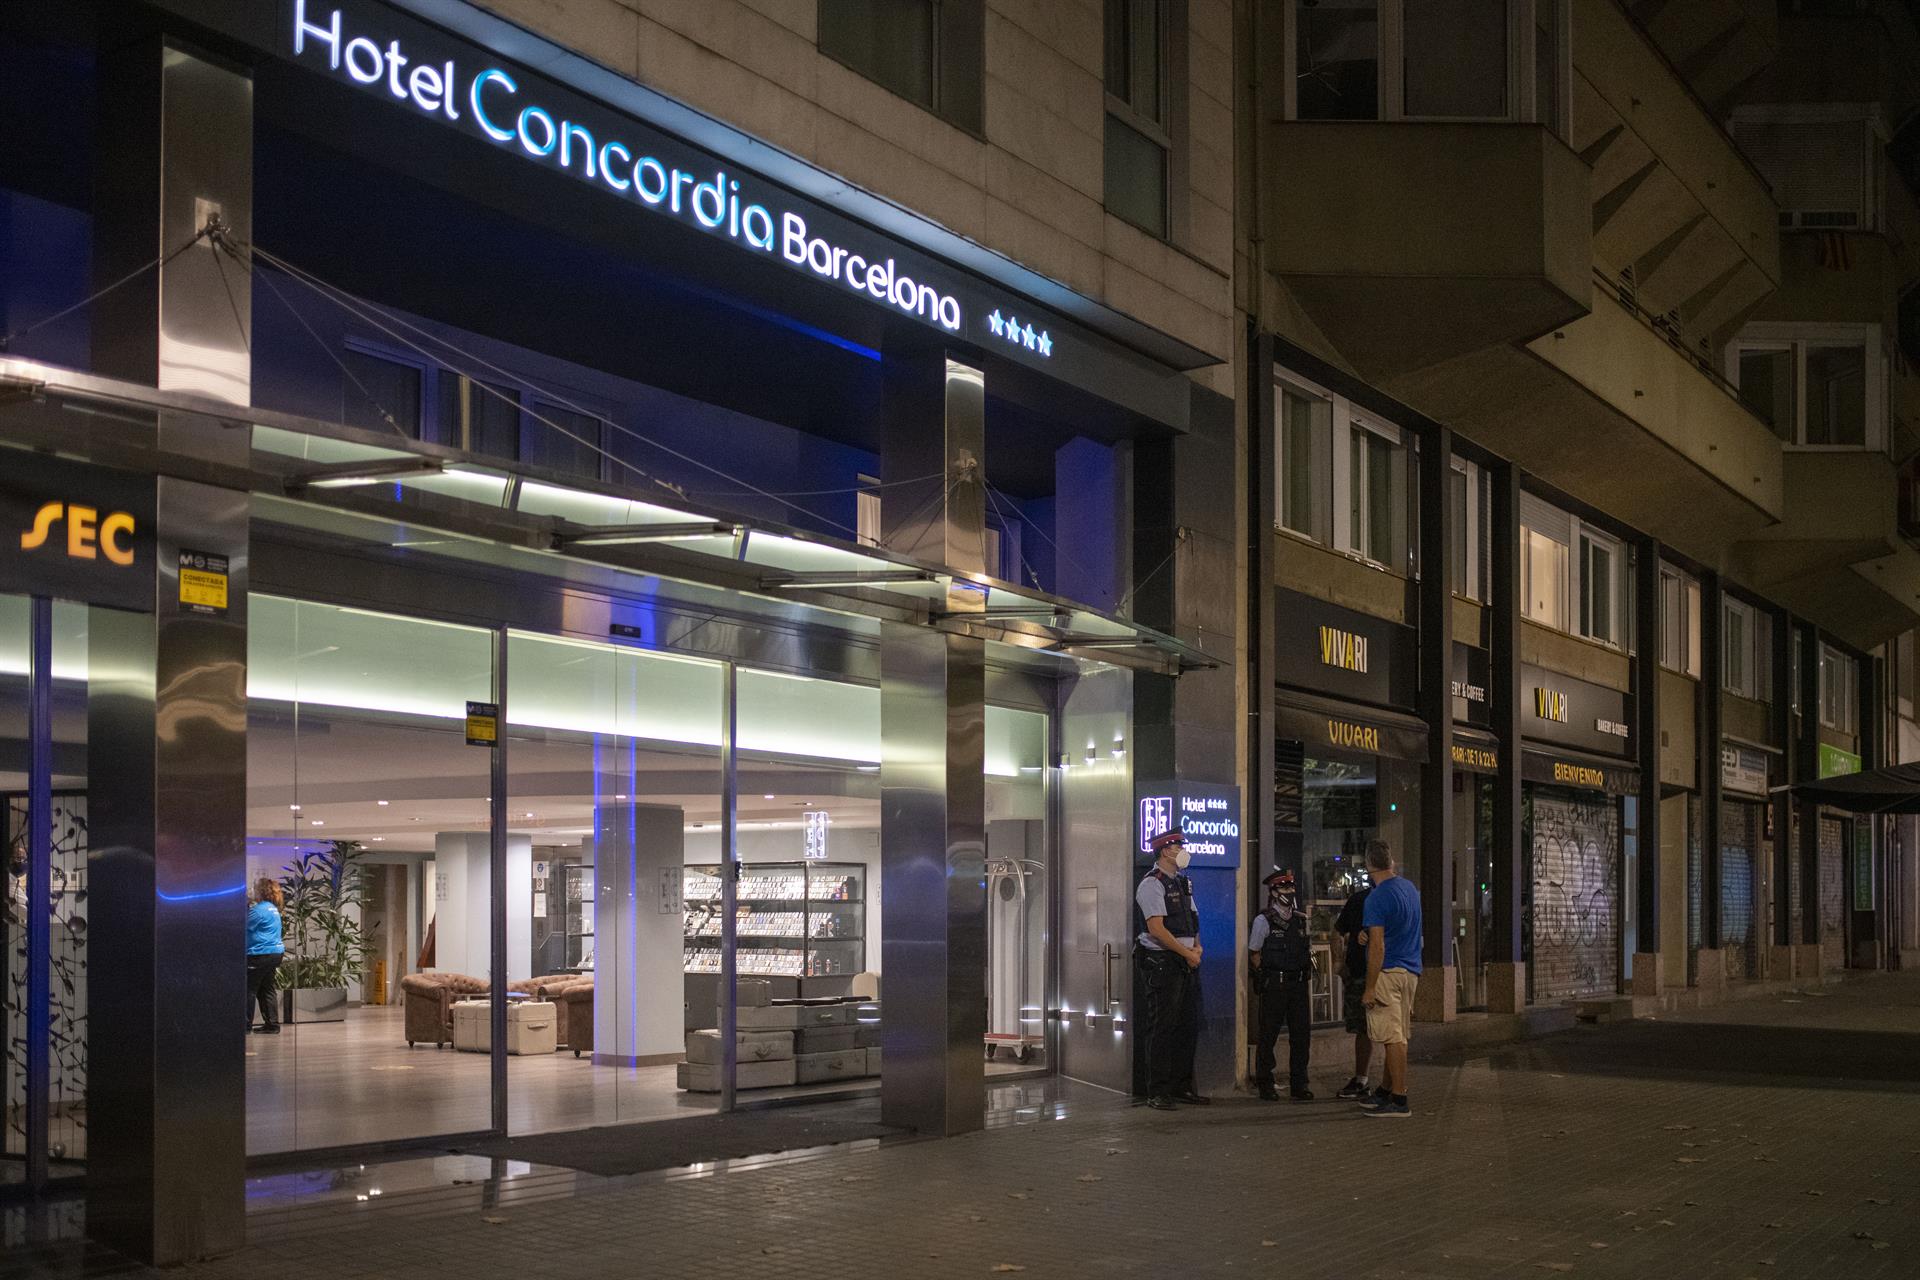 Varios agentes de los Mossos dEsquadra, en la entrada del Hotel Concordia, a 25 de agosto de 2021, en Barcelona